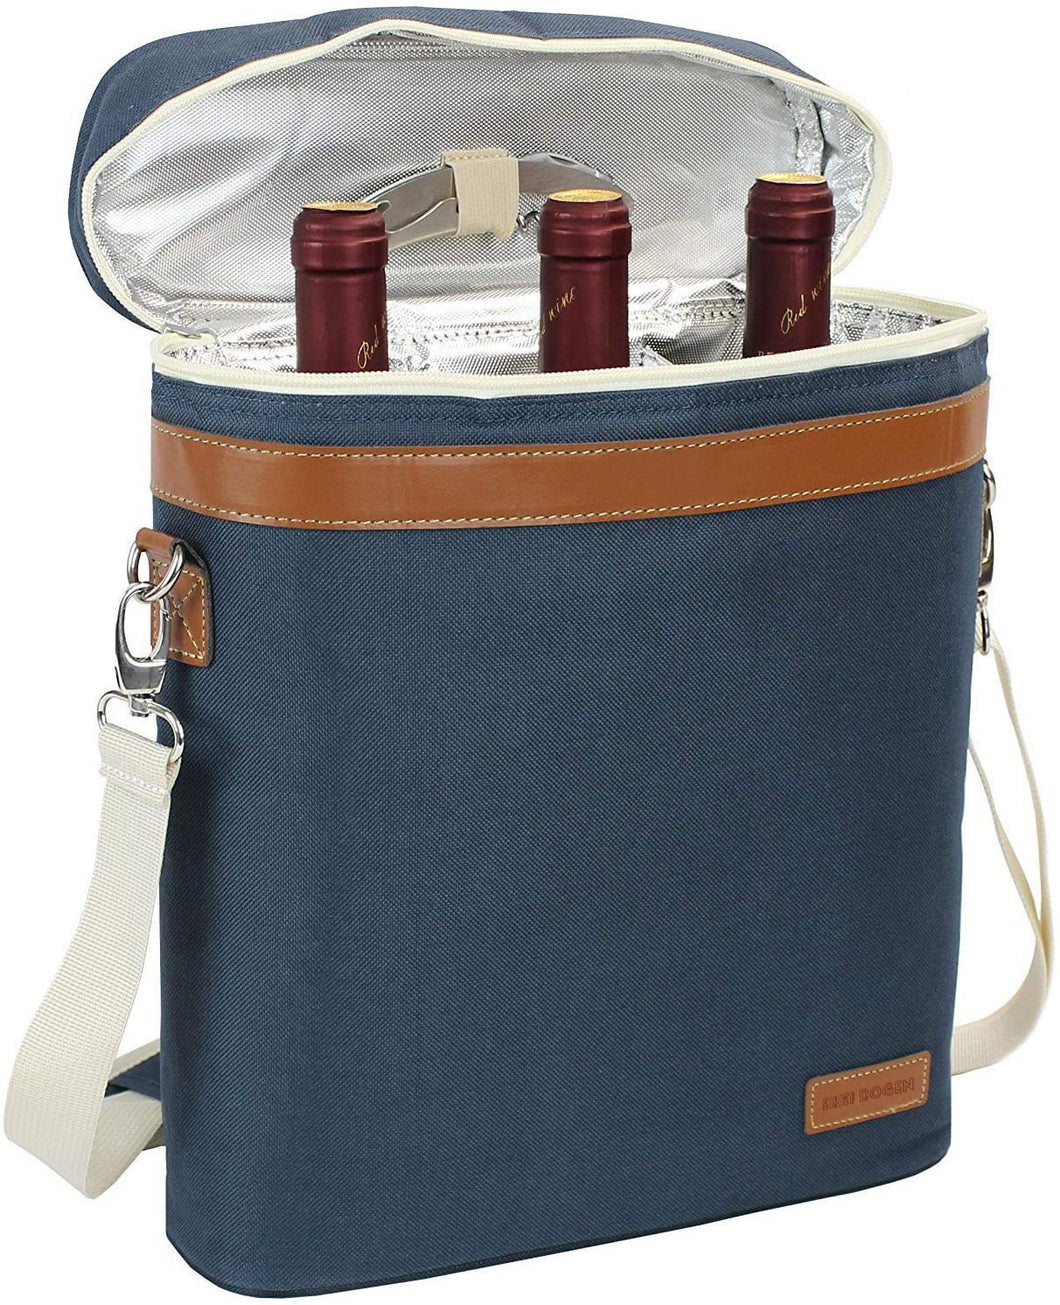 3 Bottle Wine Carrier Tote Bag